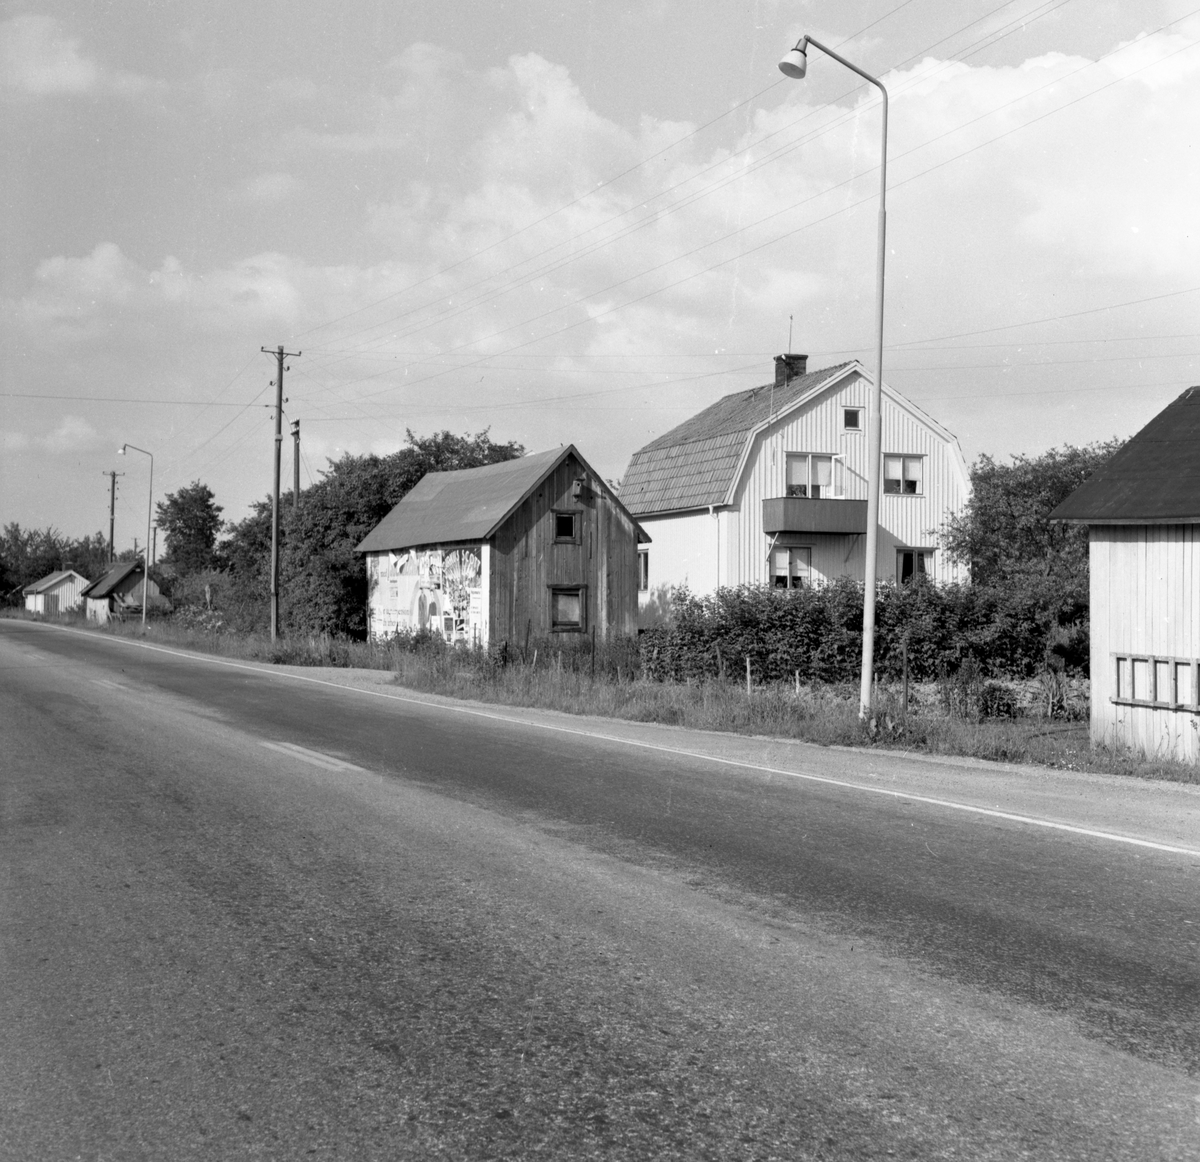 Någonstans i Värmland - från slutet av 1950-talet: Vålberg. 
Huset har idag Långgatan 80, Vålberg. Skjulet till höger, som bara halva syns är Långgatan 78.